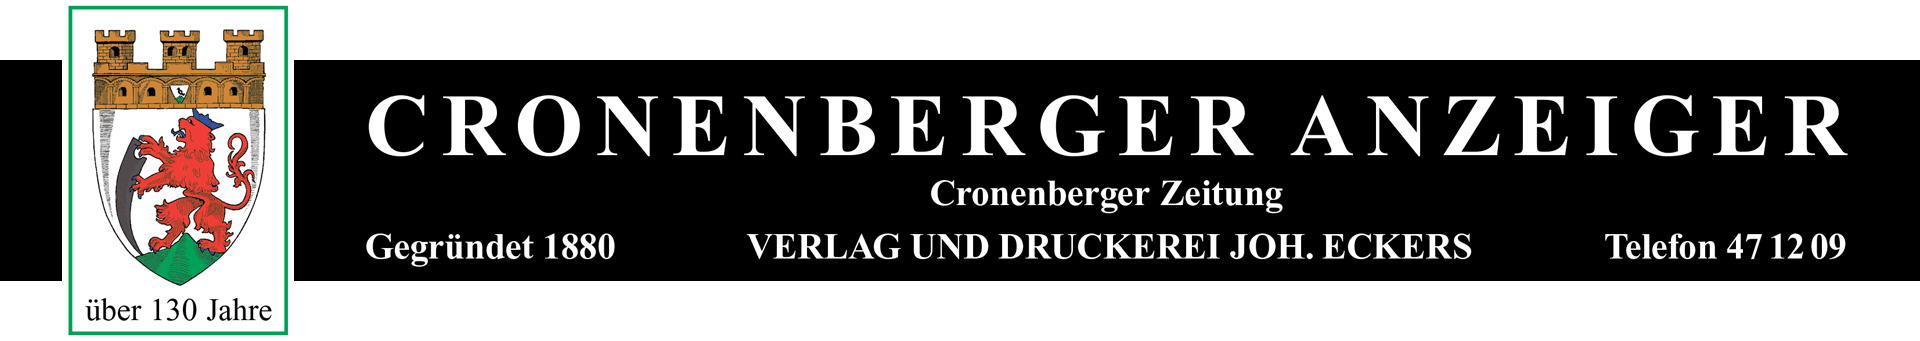 Cronenberger Anzeiger